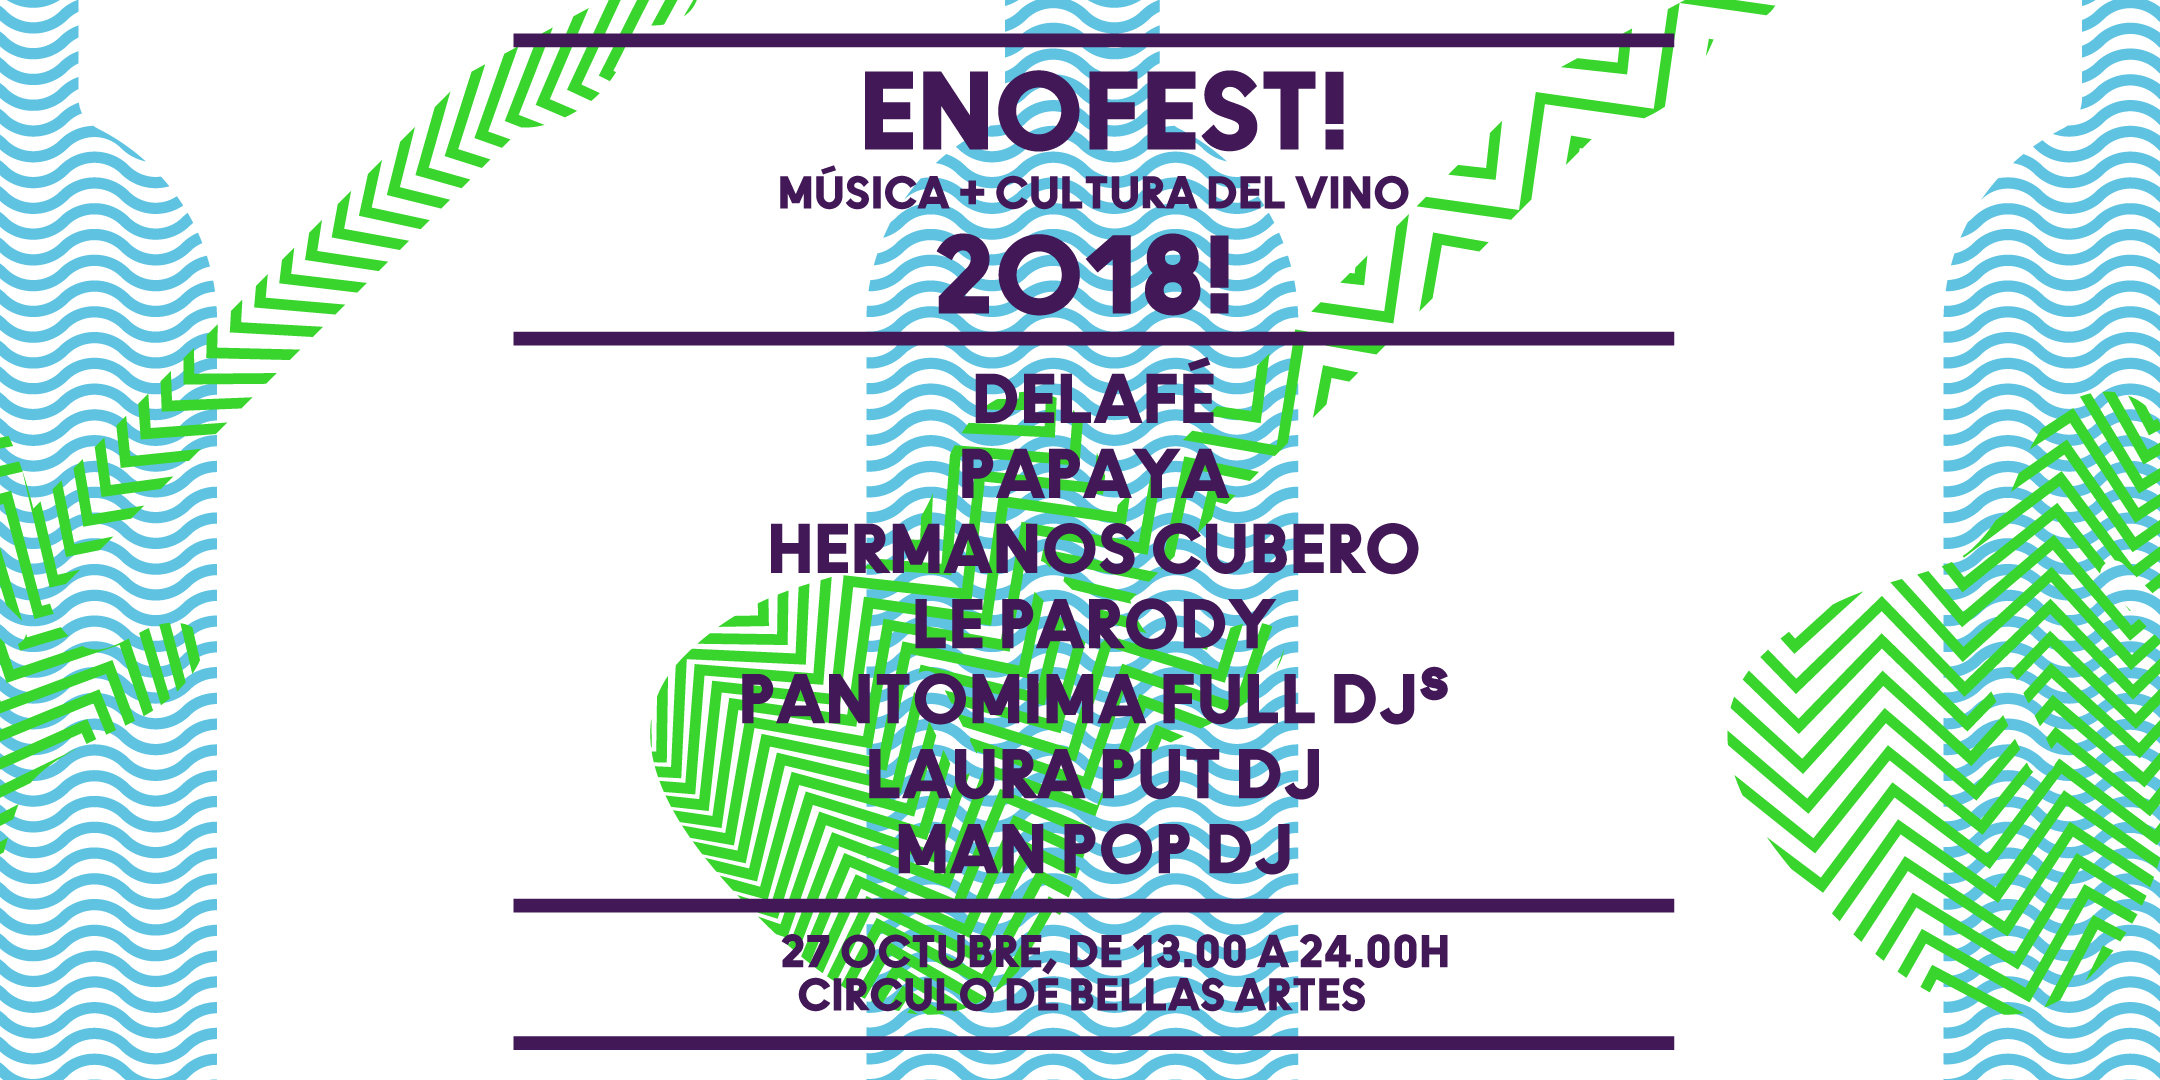 Enofestival Madrid 2018